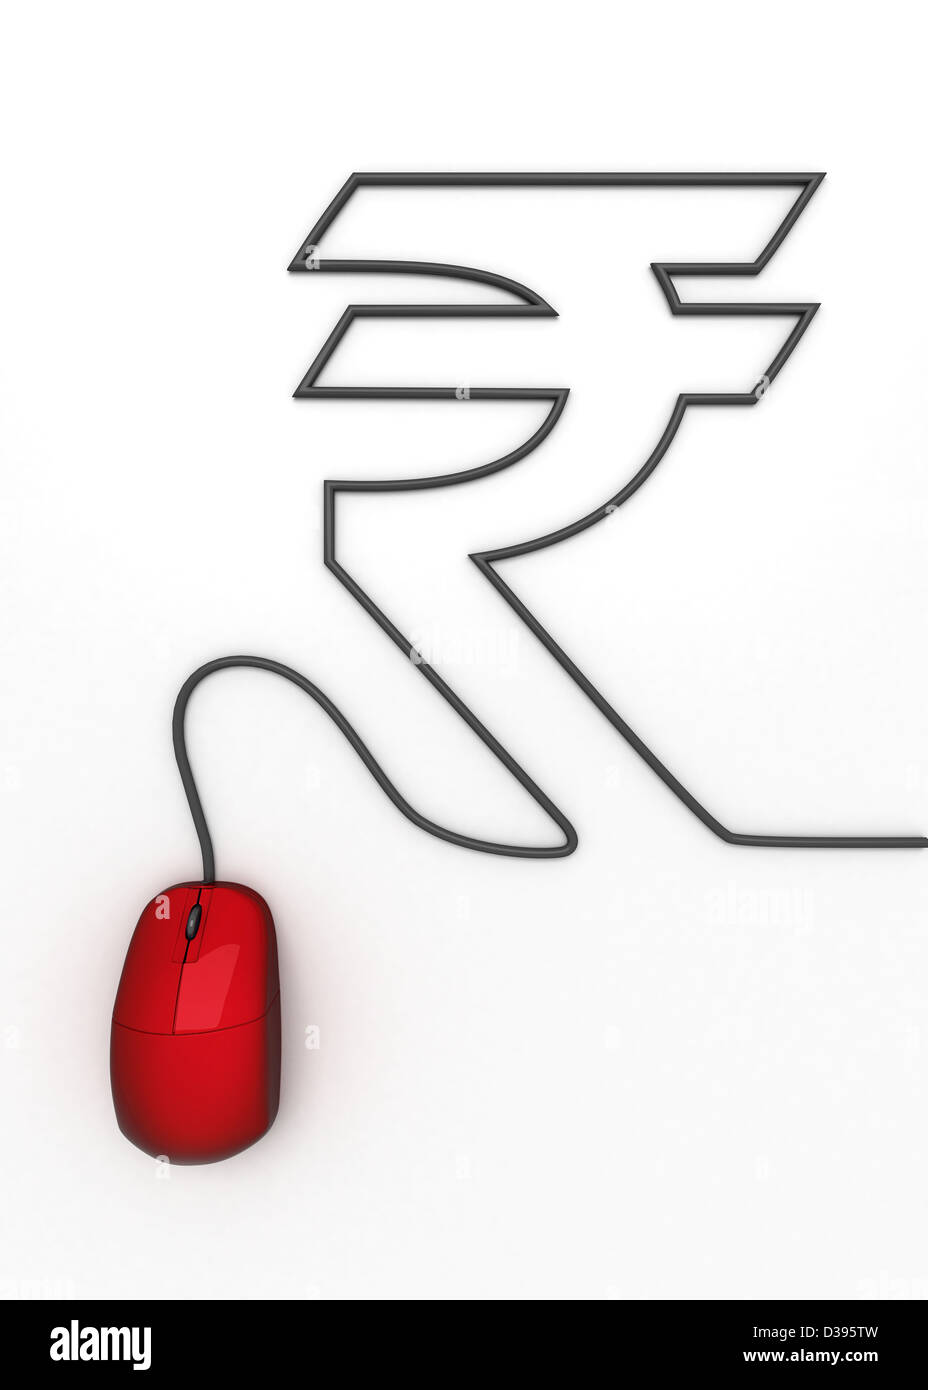 Immagine concettuale del mouse collegamento a rupia indiana simbolo su sfondo bianco Foto Stock